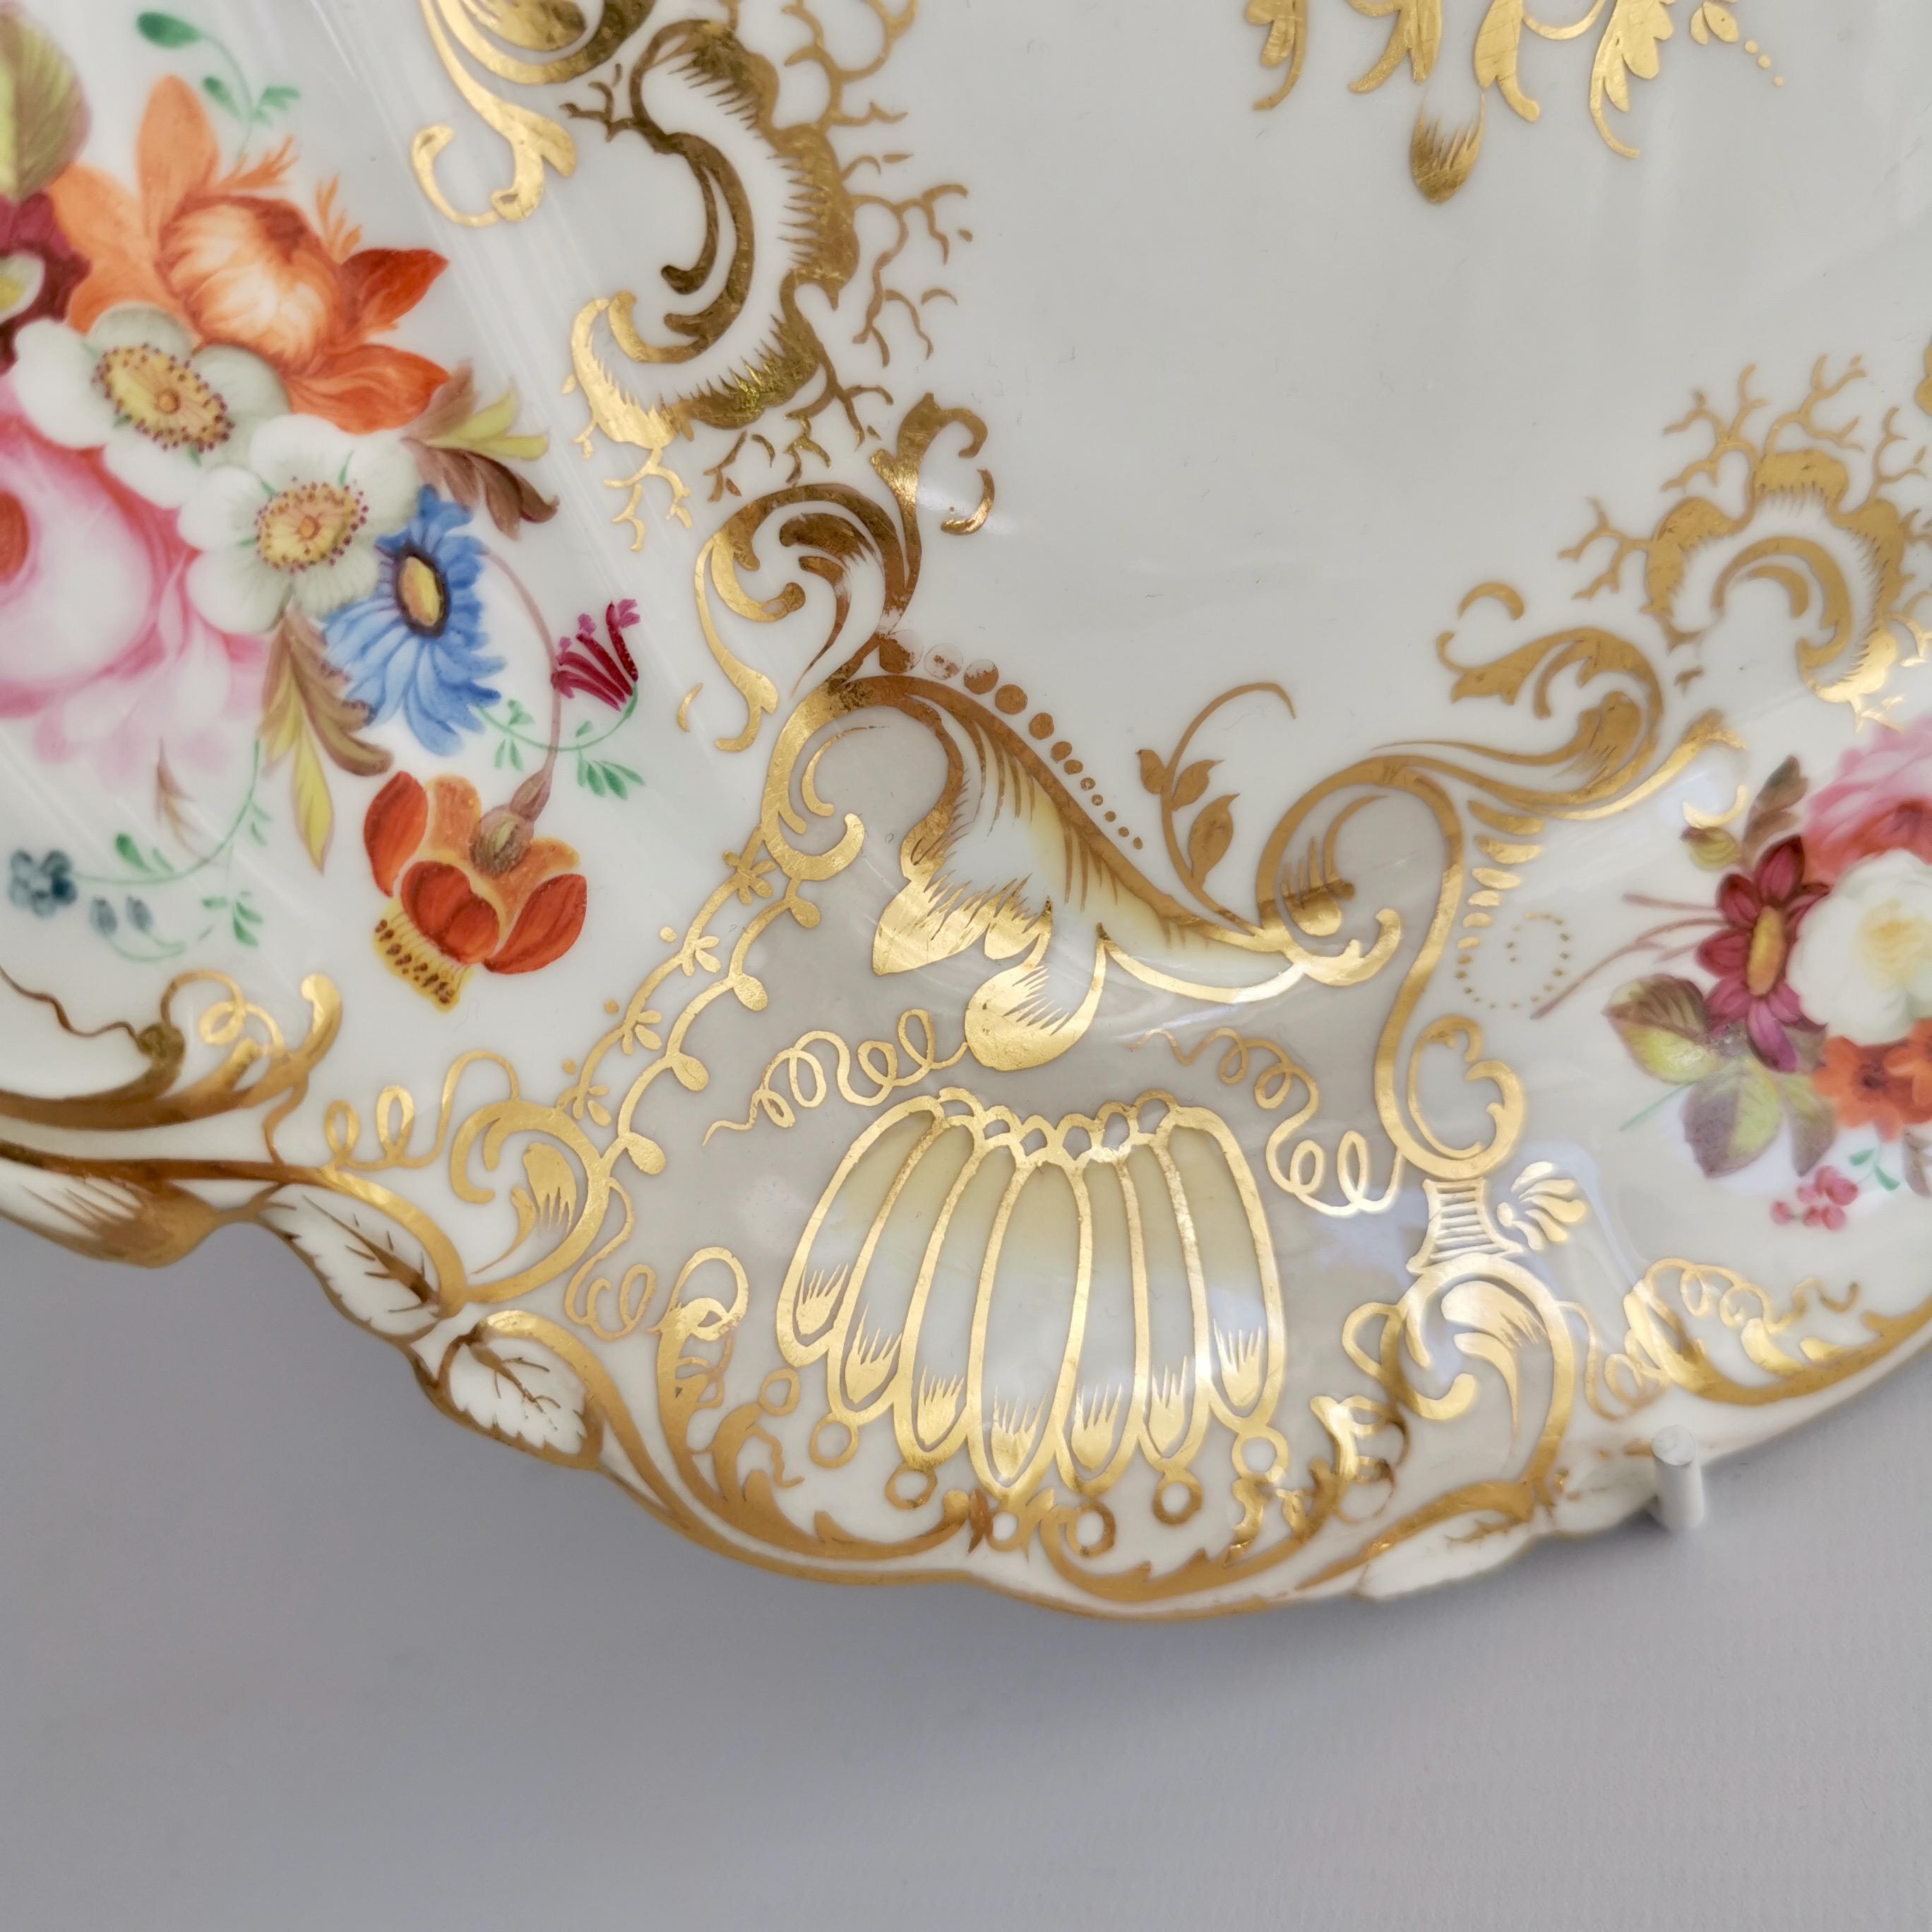 Coalport Porcelain Cake Plate, Gilt, Flowers Attr. T. Dixon, Rococo Revival 1834 1